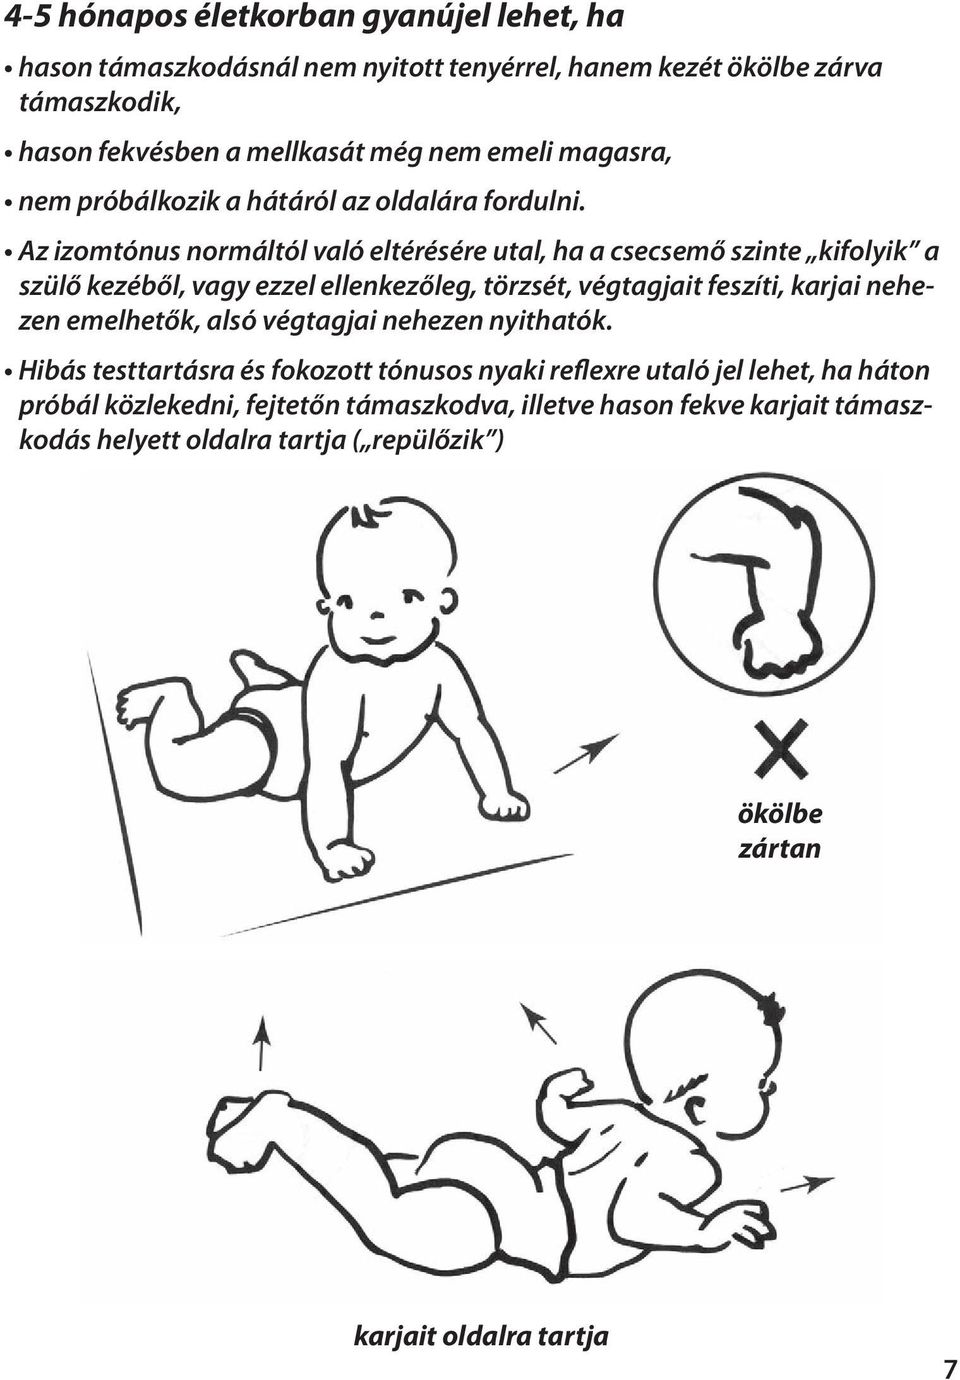 Az izomtónus normáltól való eltérésére utal, ha a csecsemő szinte kifolyik a szülő kezéből, vagy ezzel ellenkezőleg, törzsét, végtagjait feszíti, karjai nehezen